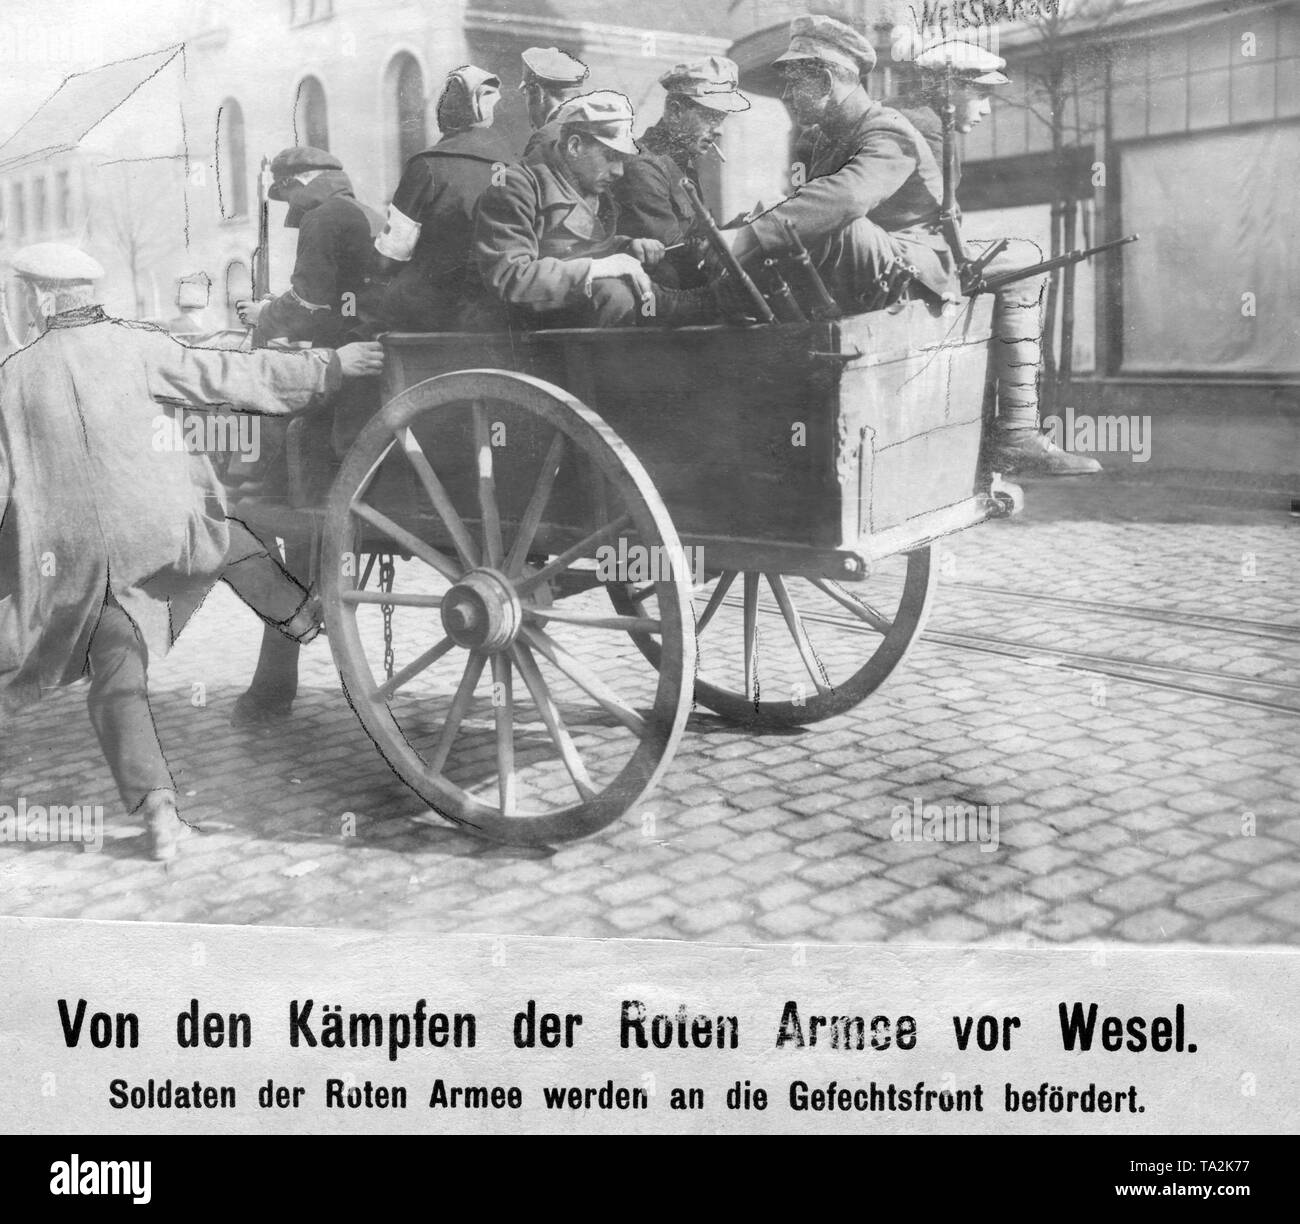 Soldats de l'Armée Rouge sont envoyés au front. Deux jours après le début de l'Kapp-Putsch, une insurrection communiste a éclaté dans la région de la Ruhr. Les travailleurs armés le pouvoir à la Ruhr. Les Freikorps, qui est intervenu sur la commande du gouvernement, est repoussée et subit de lourdes pertes. Il a d'abord le 2 avril, lors de la Reichswehr est intervenu, lorsque l'Armée Rouge avait à se retirer. Après batailles sanglantes de la Reichswehr est parvenu à rétablir l'ordre ancien par le 10 mai. Banque D'Images